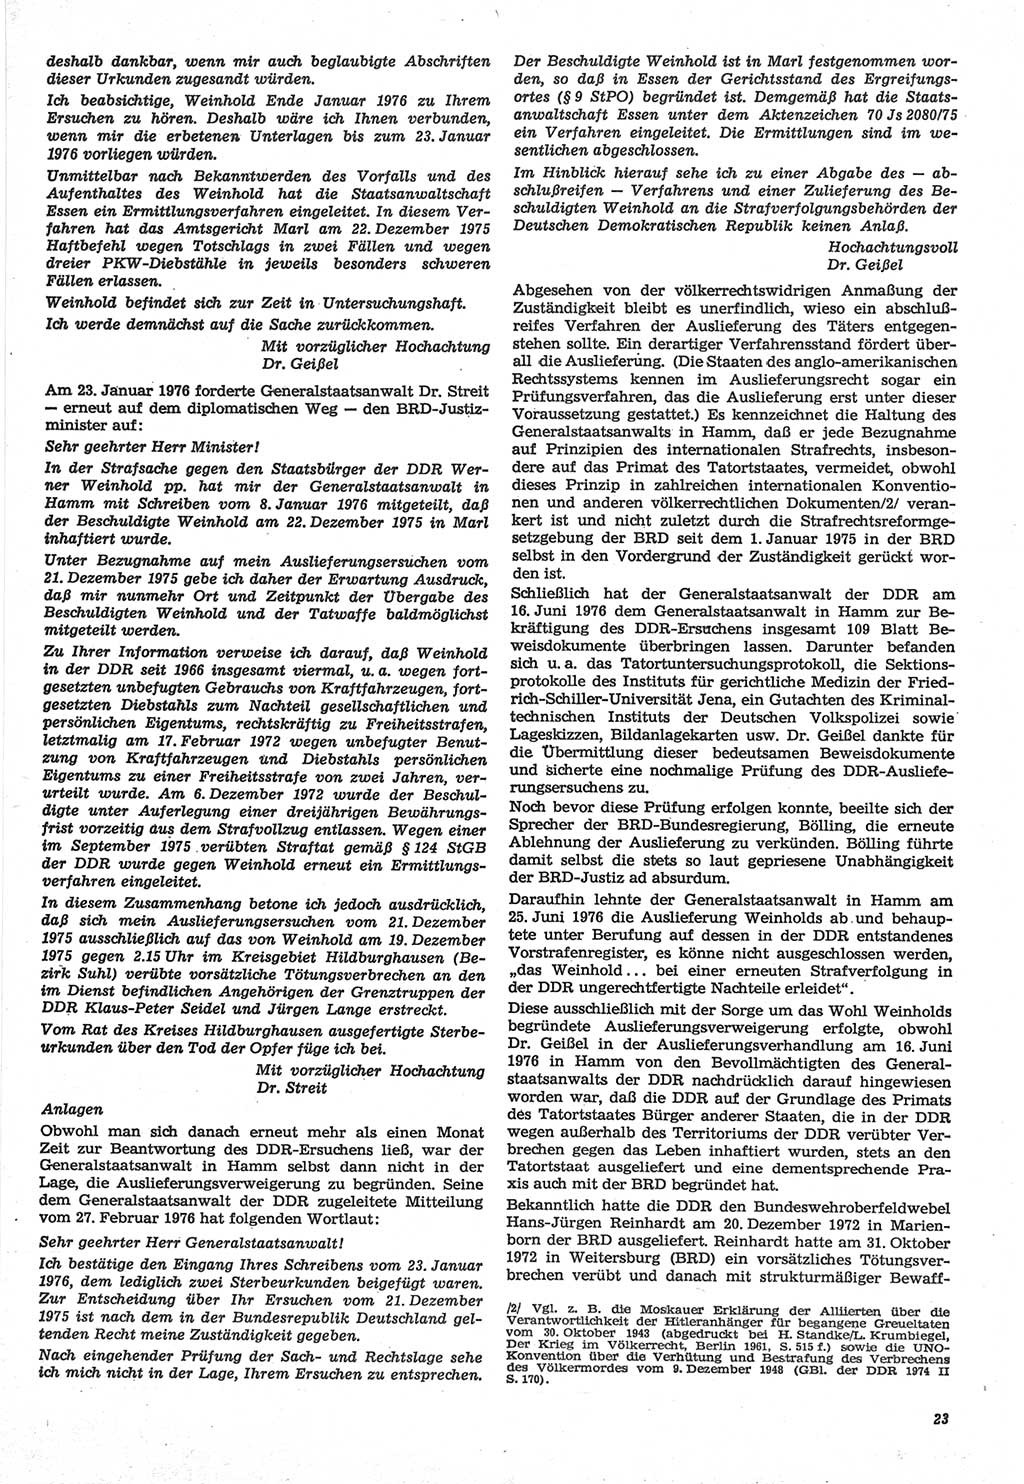 Neue Justiz (NJ), Zeitschrift für Recht und Rechtswissenschaft-Zeitschrift, sozialistisches Recht und Gesetzlichkeit, 31. Jahrgang 1977, Seite 23 (NJ DDR 1977, S. 23)